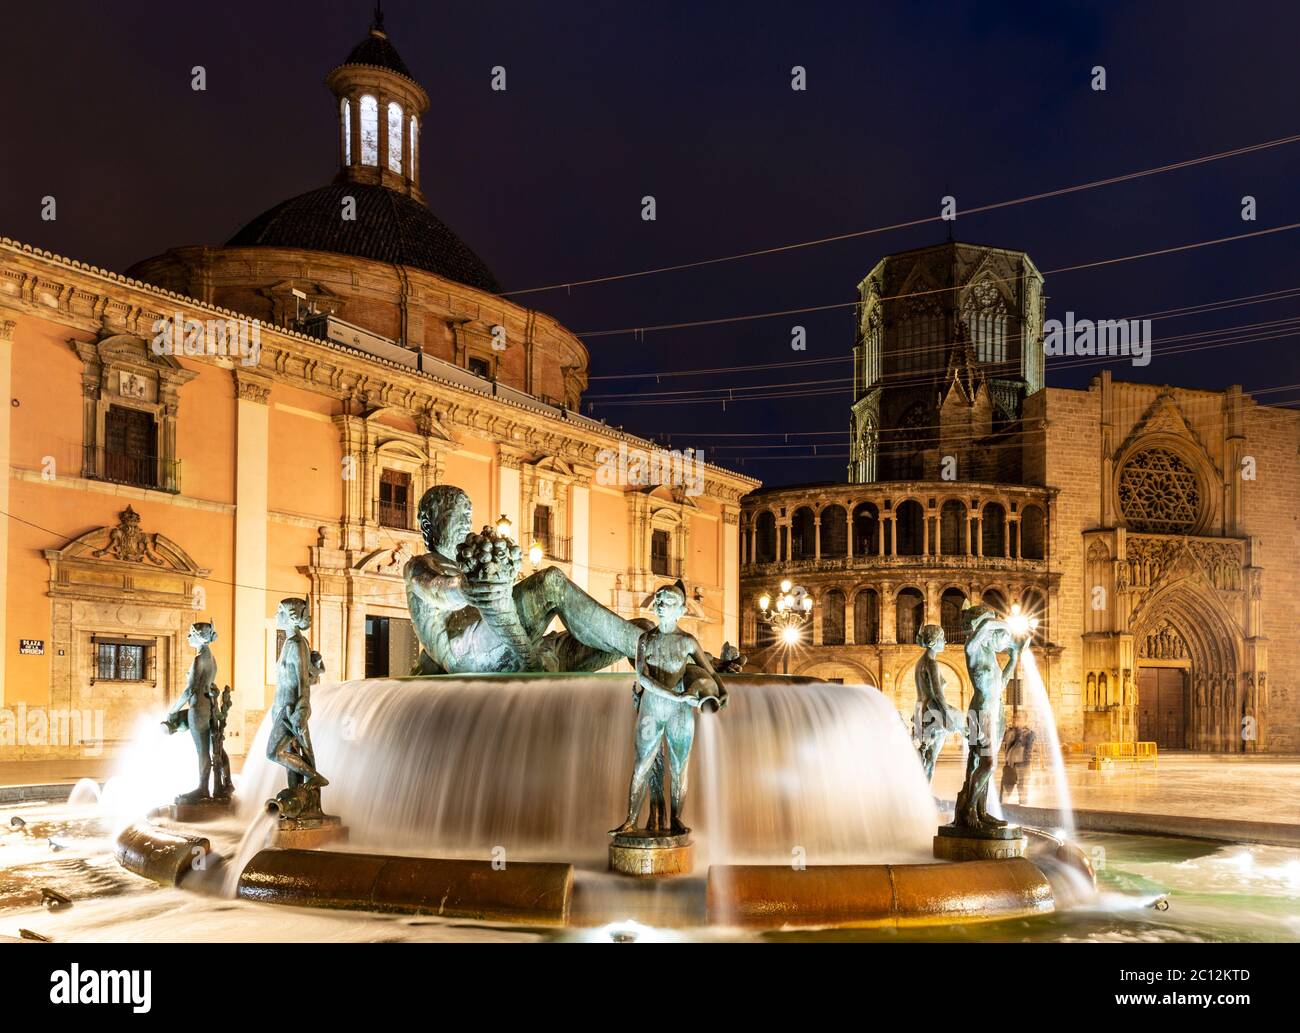 la Fuente del Turia (Fontaine de Turia) et la cathédrale de Valence, Plaza de la Virgen, Valence, Espagne. Banque D'Images